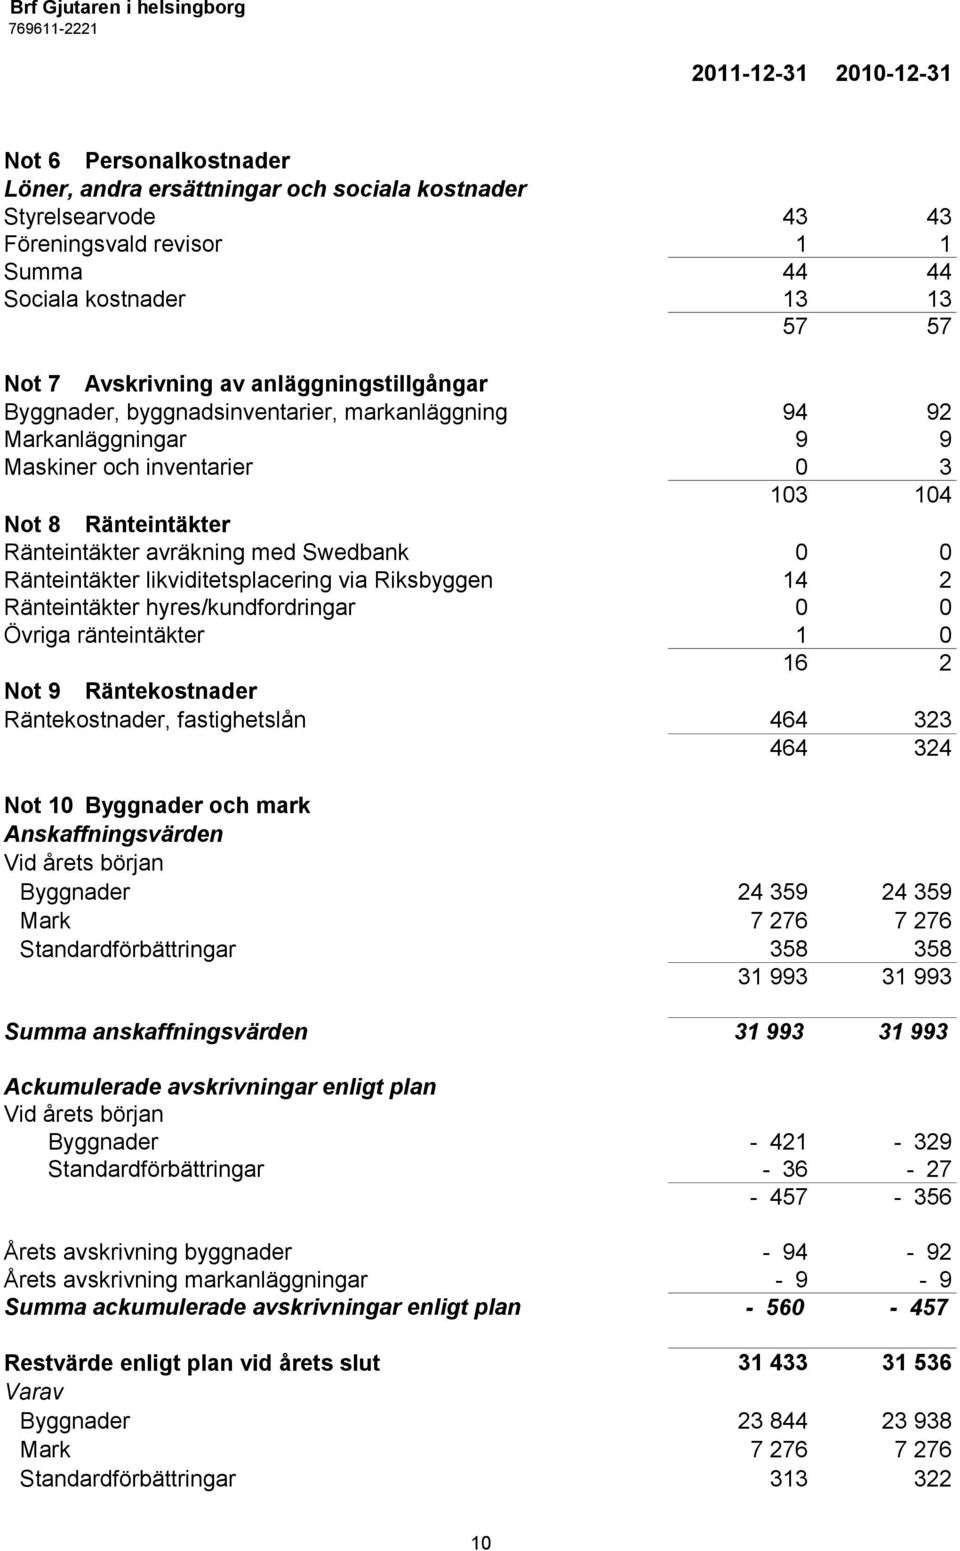 Swedbank 0 0 Ränteintäkter likviditetsplacering via Riksbyggen 14 2 Ränteintäkter hyres/kundfordringar 0 0 Övriga ränteintäkter 1 0 16 2 Not 9 Räntekostnader Räntekostnader, fastighetslån 464 323 464